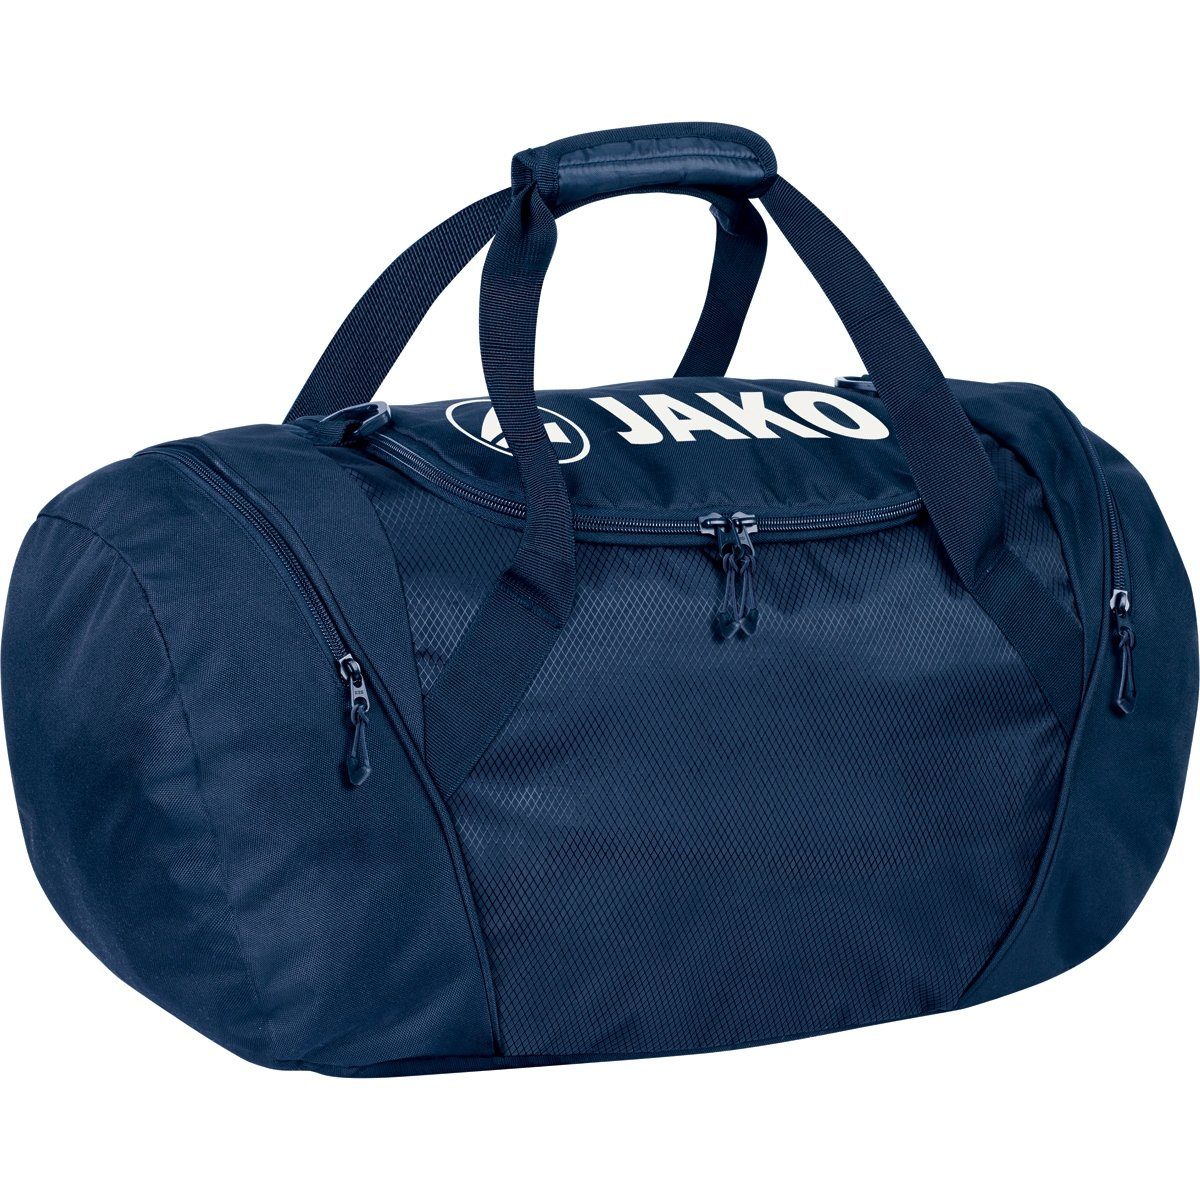 One (Größe: und Rucksack Jako 09 Sporttasche in Sporttasche - marine blau 1989 L)